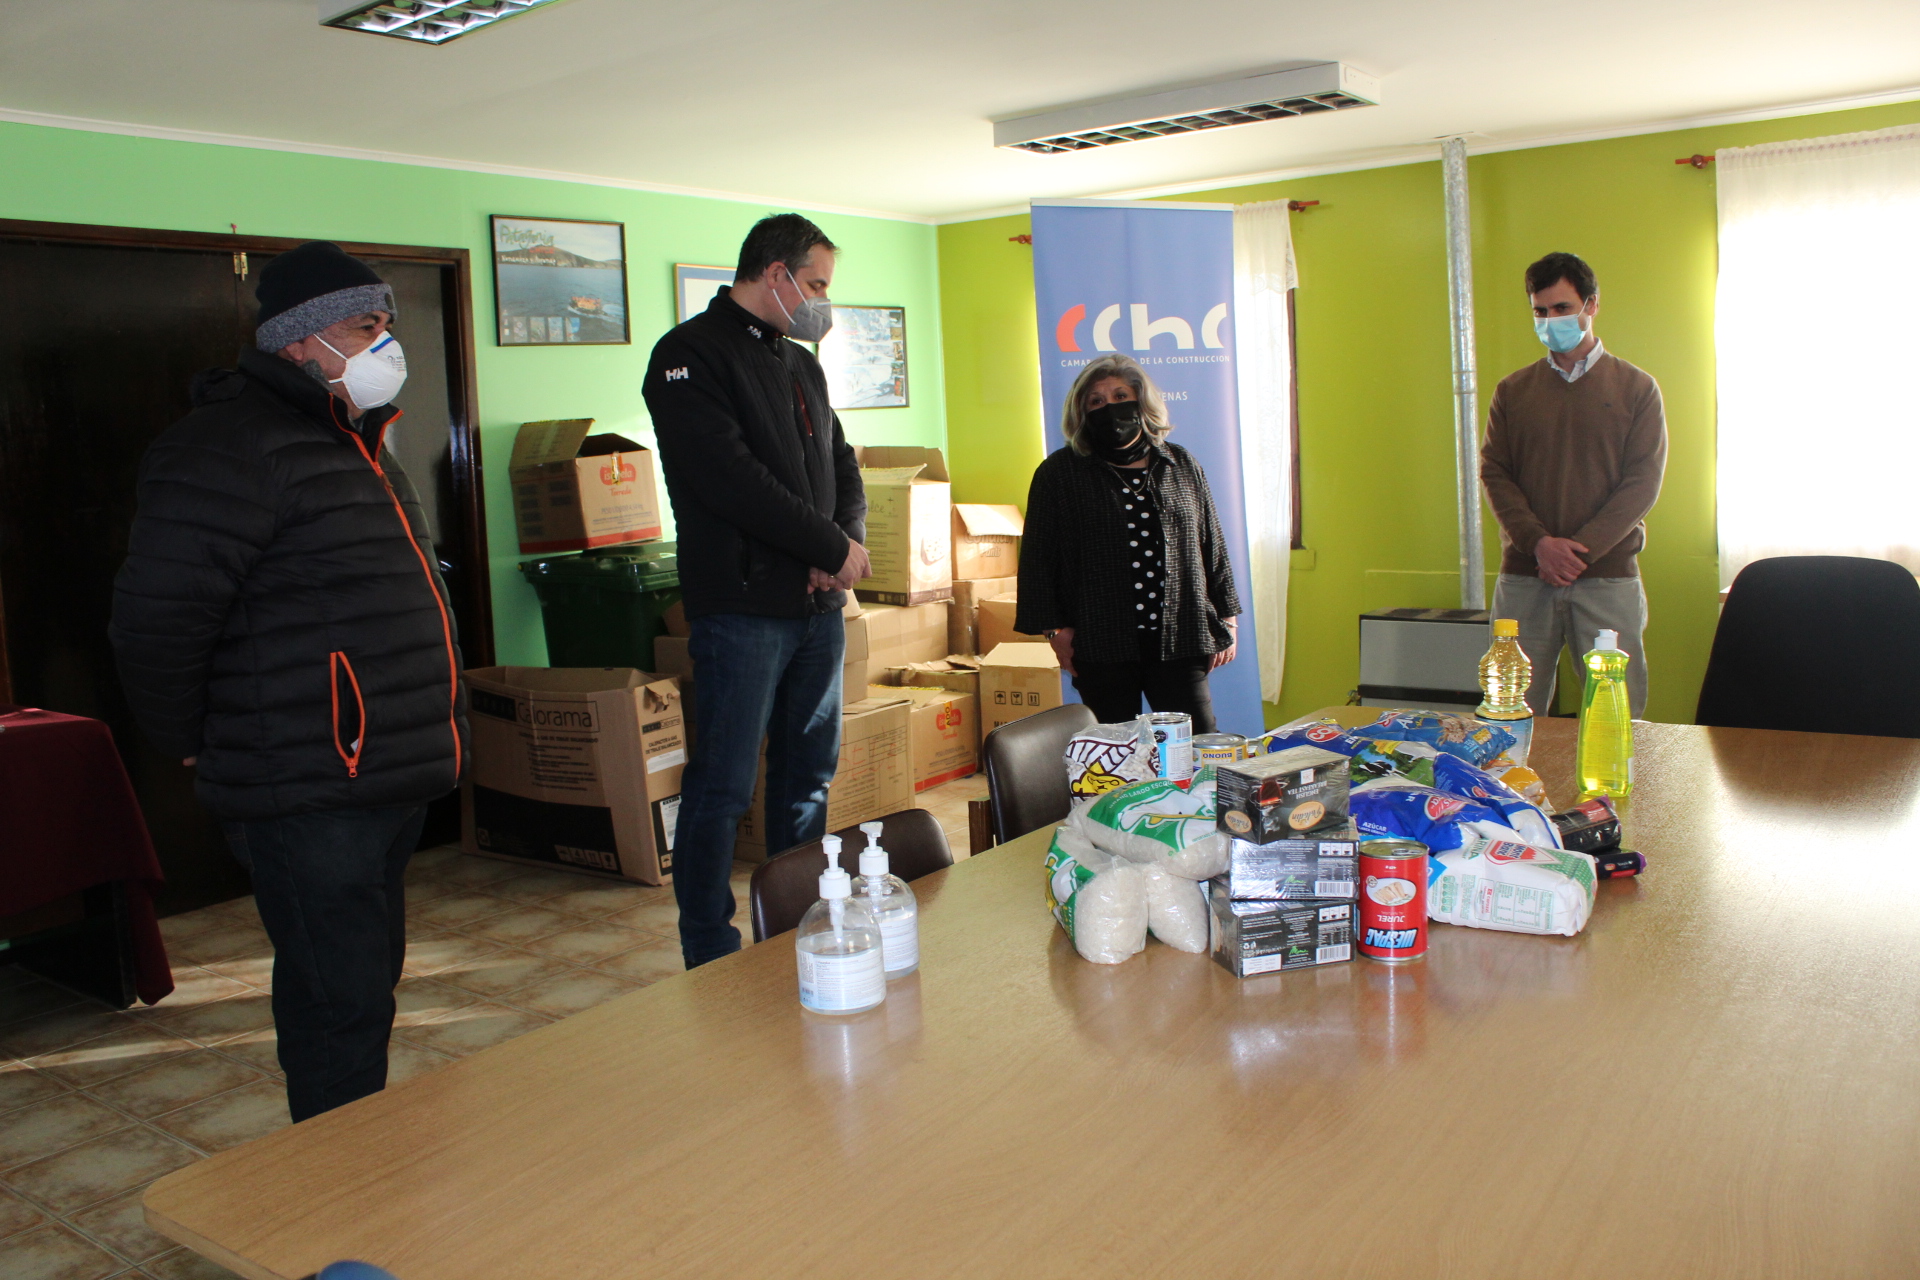 Continúa el apoyo a la comunidad de Punta Arenas que sigue afectada por la pandemia